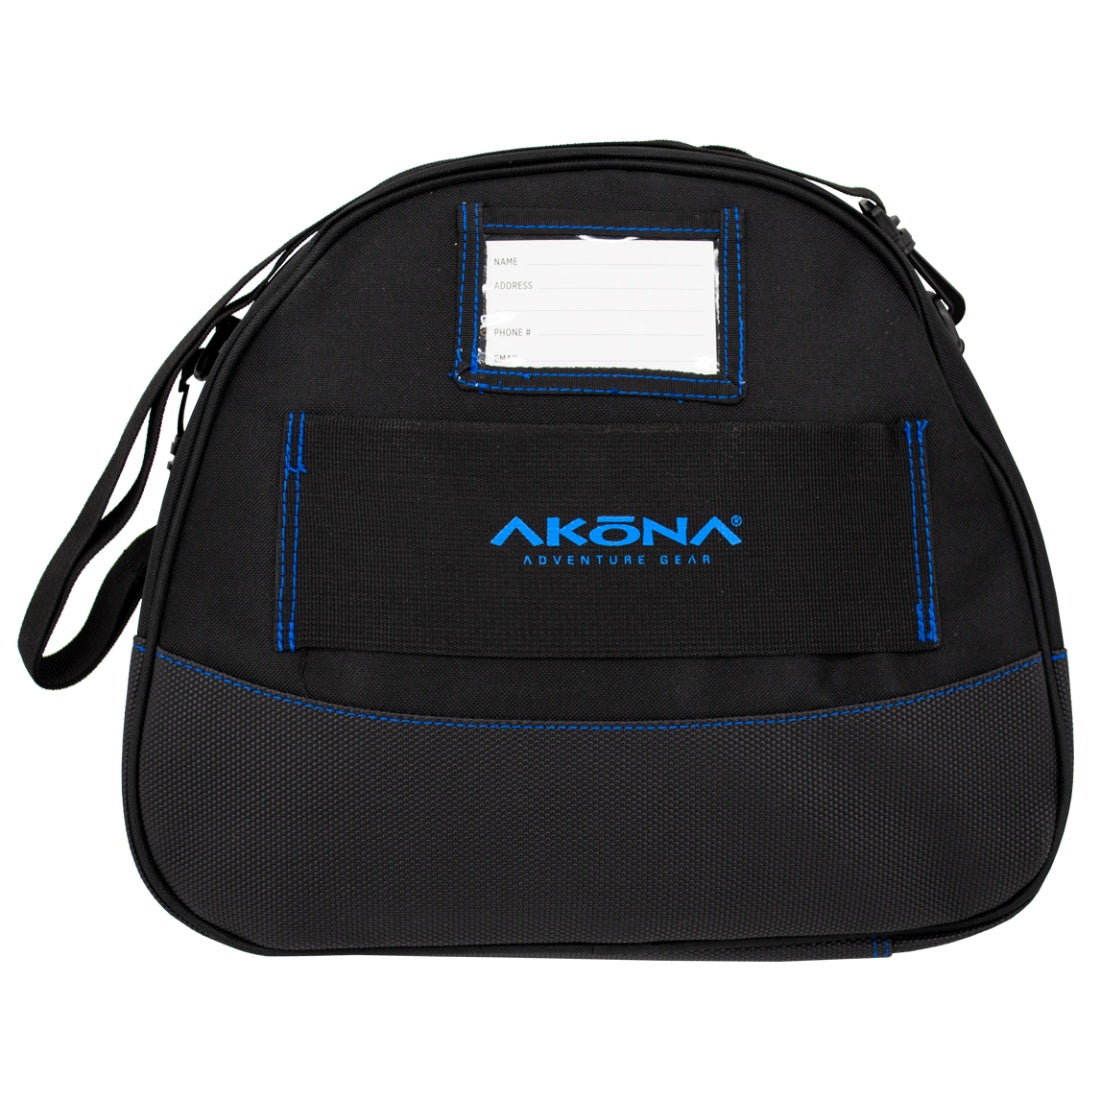 Akona Pro Regulator Bag